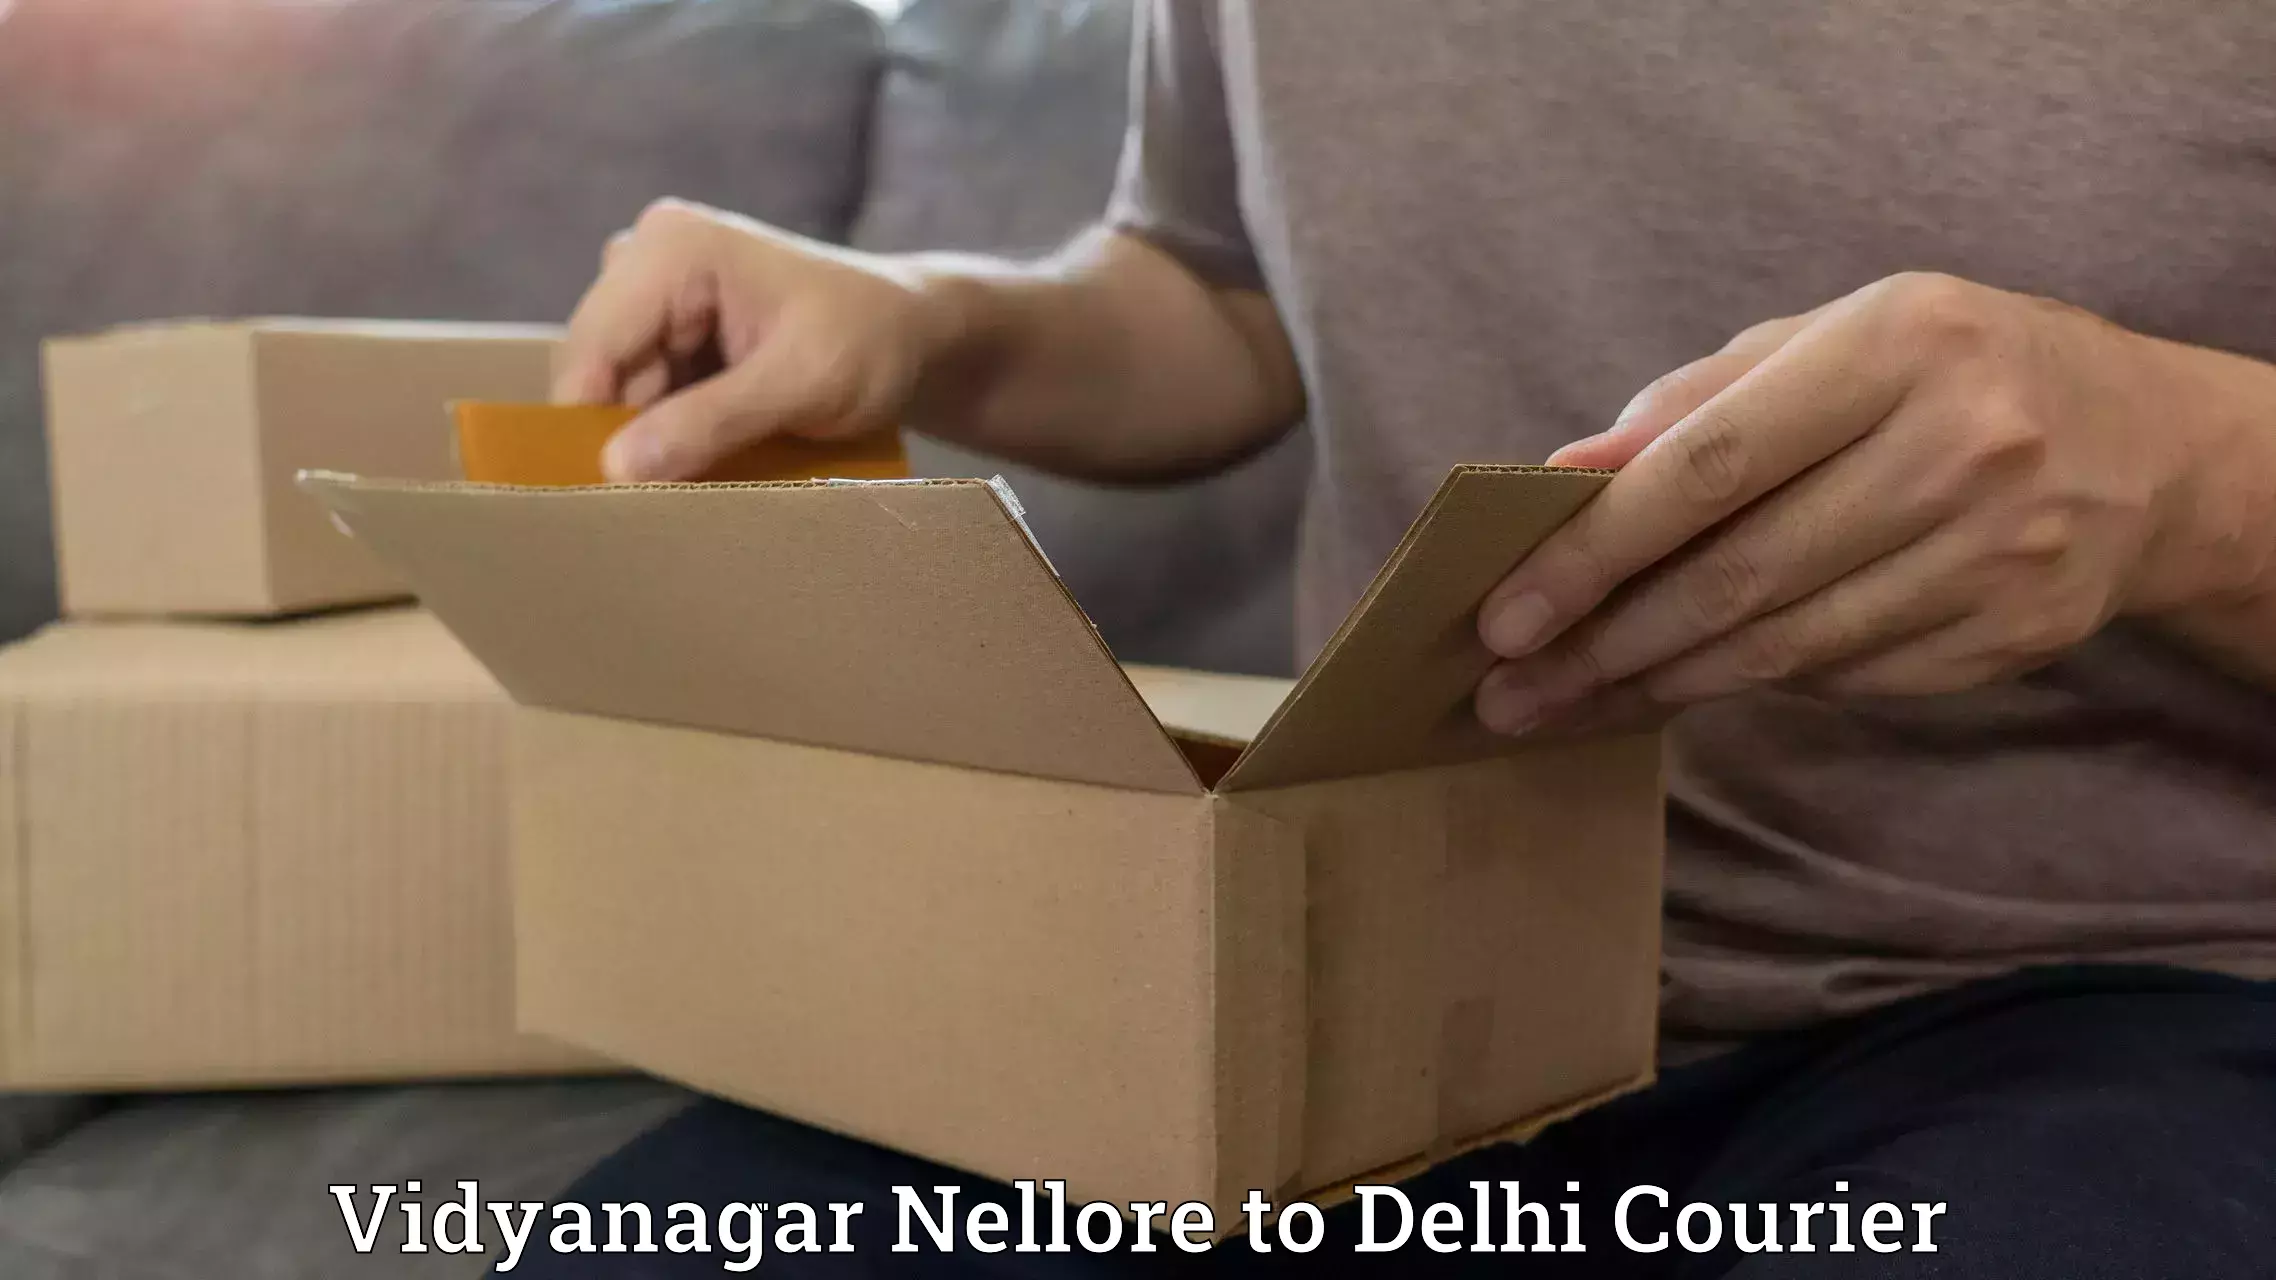 Reliable logistics providers Vidyanagar Nellore to East Delhi